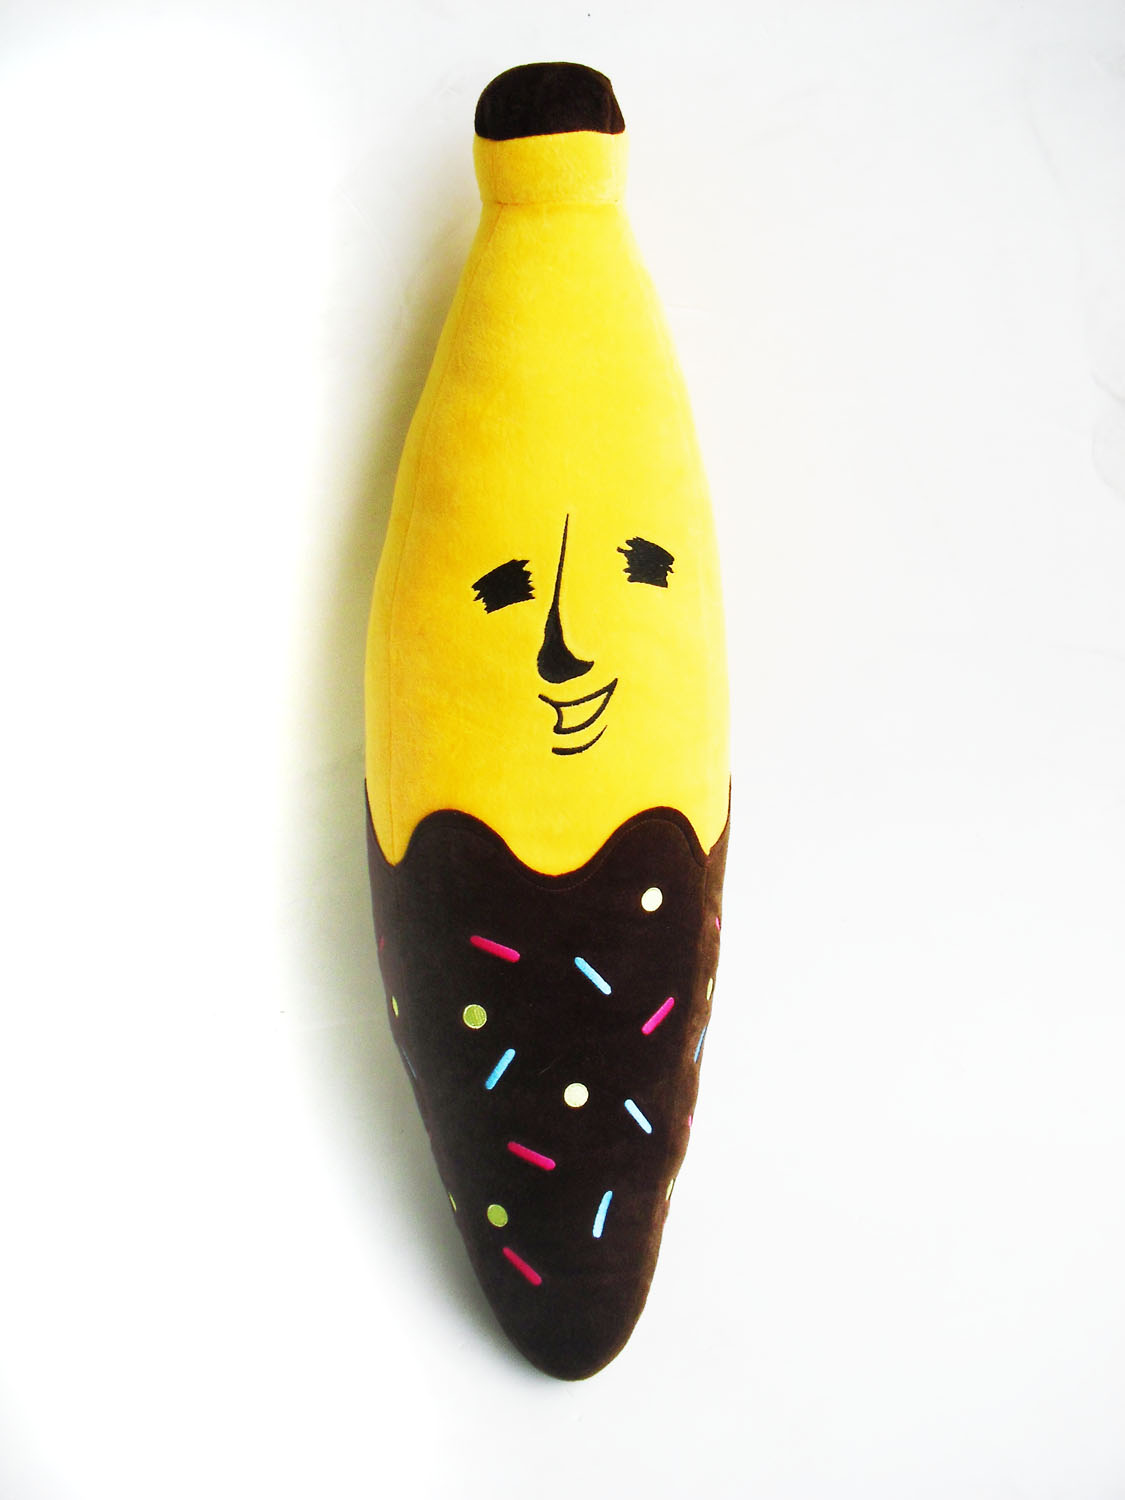 香蕉抱枕